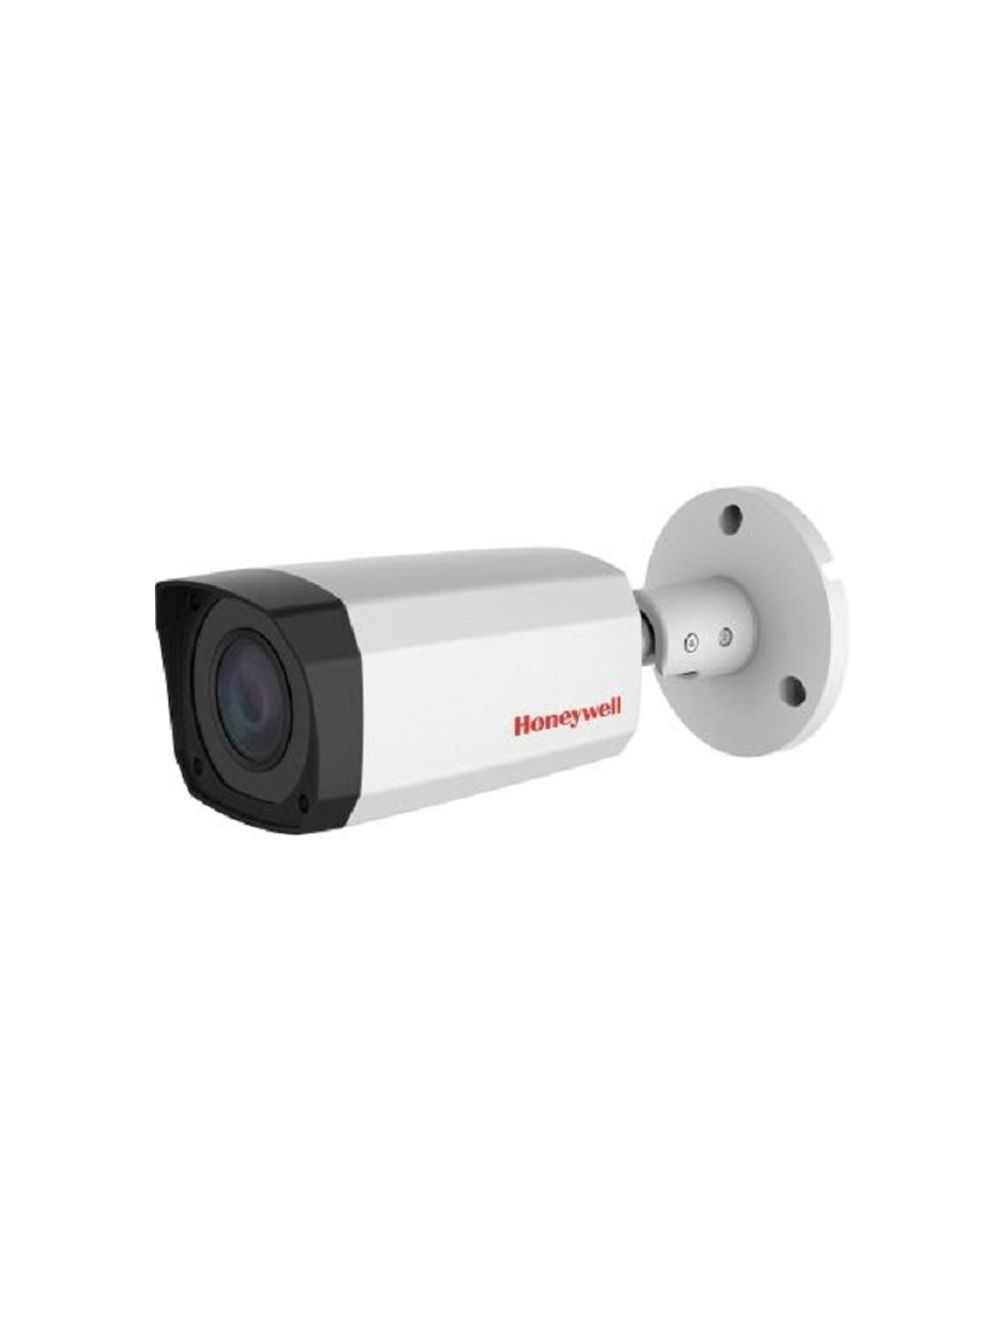 Honeywell Camera Config Tool